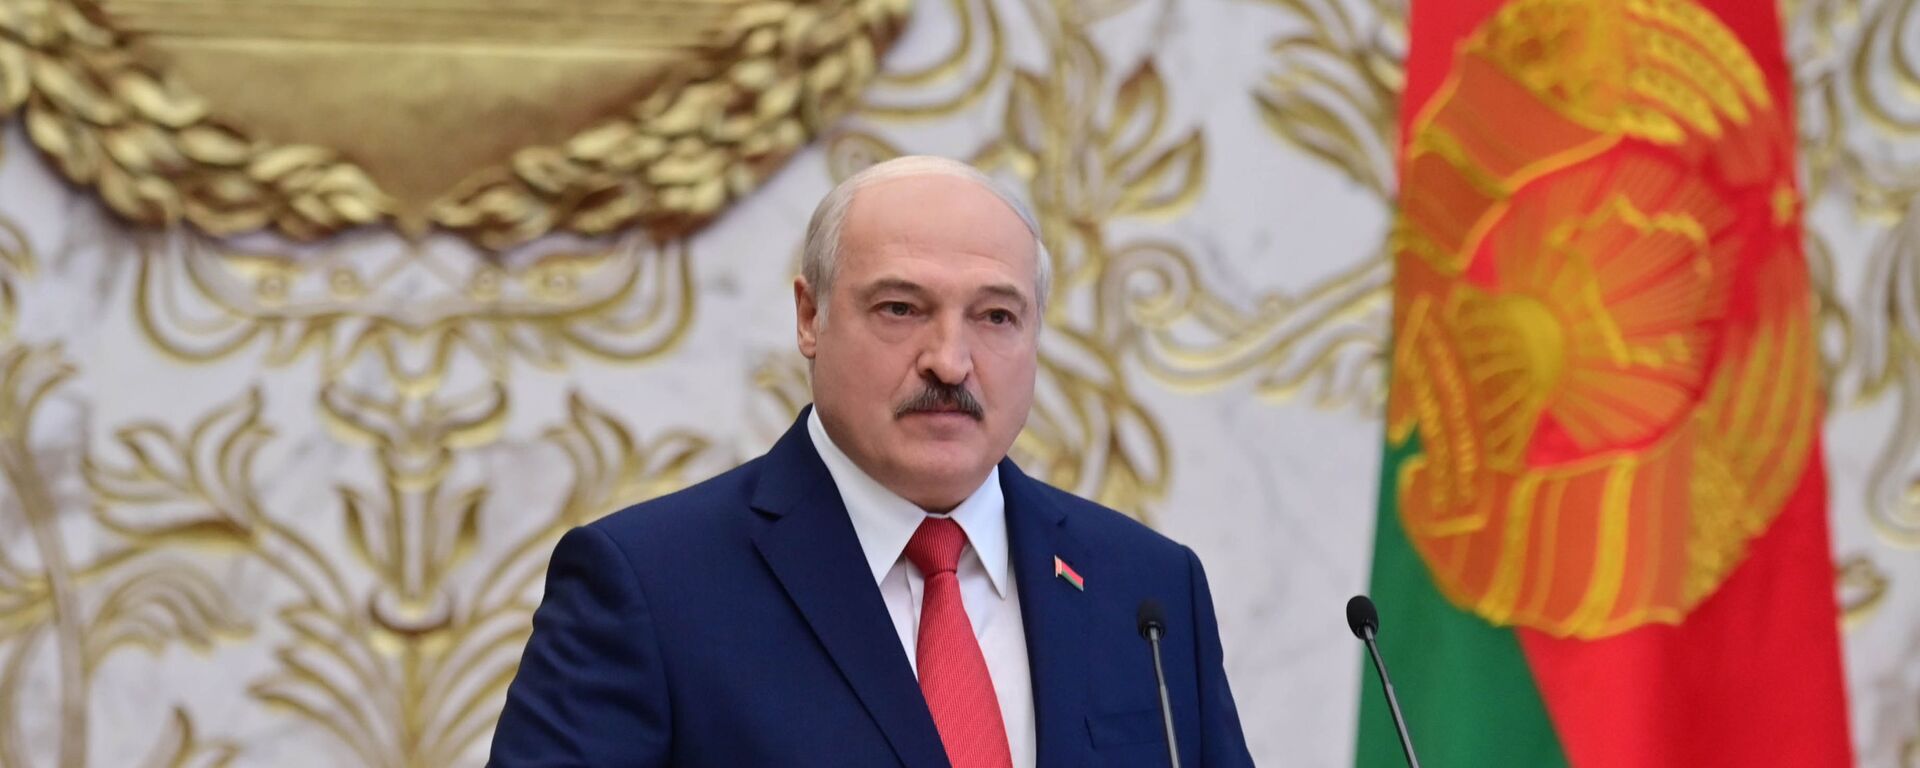 La investidura de Alexandr Lukashenko en Bielorrusia - Sputnik Mundo, 1920, 26.05.2021